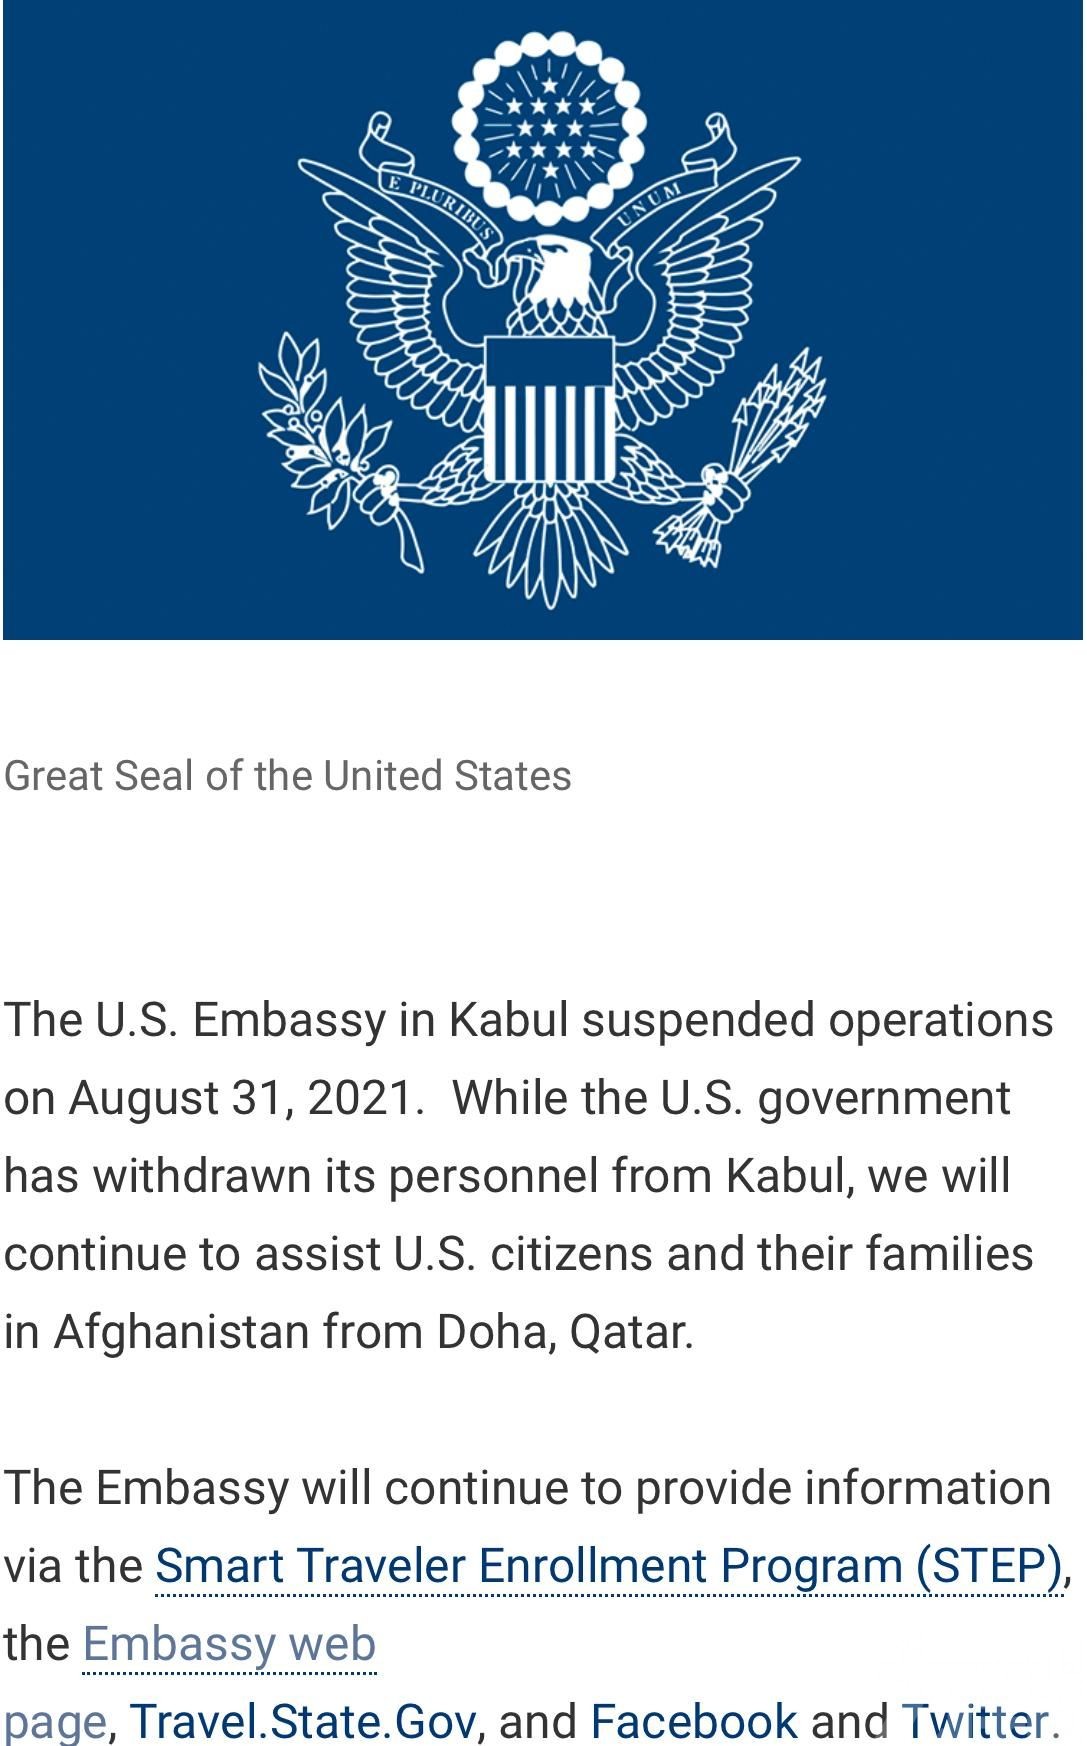 ​美國駐阿富汗大使館暫停運作